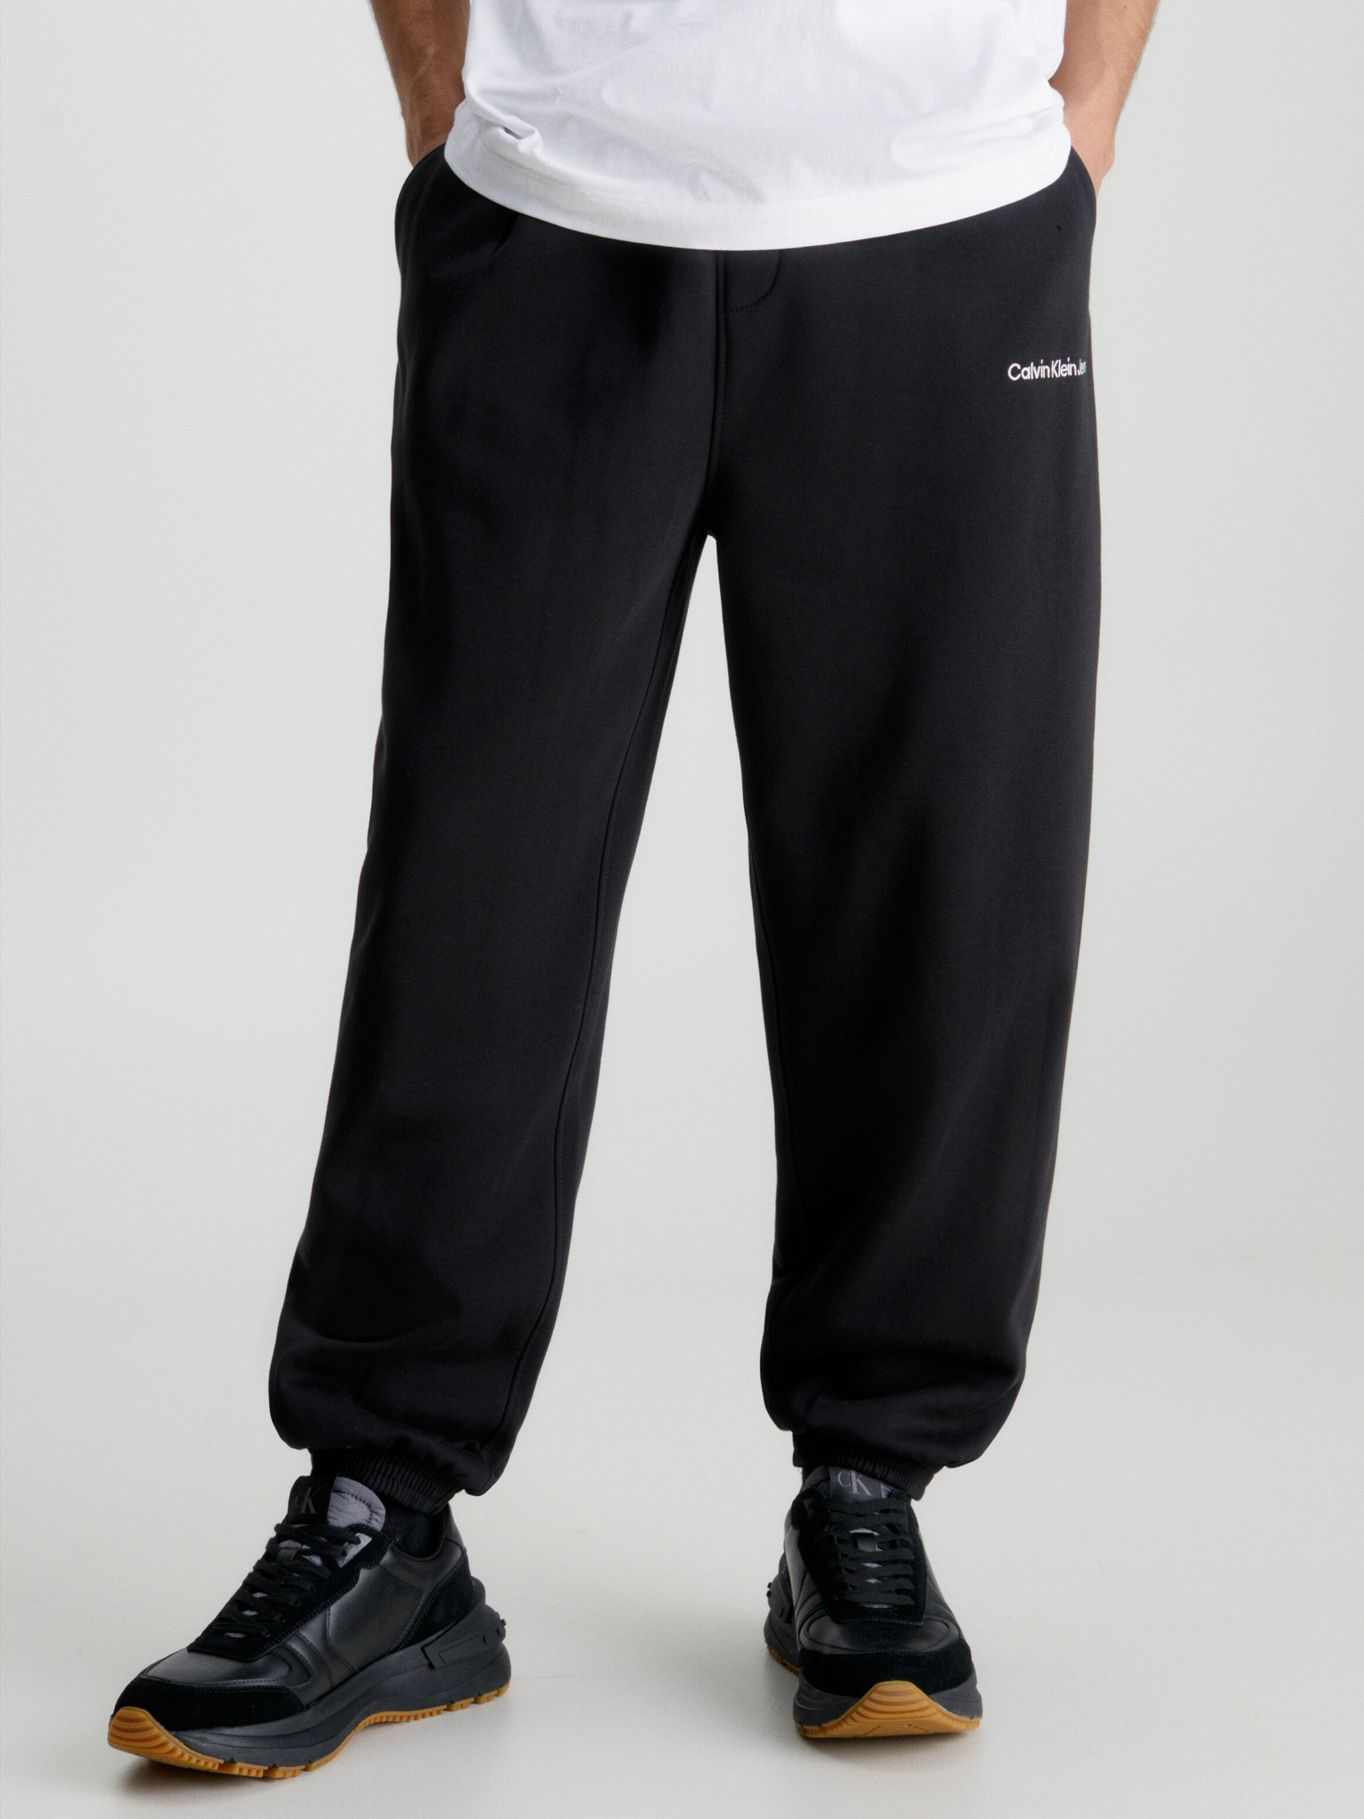 Calvin Klein pantalón chandal de algodón orgánico con logo y corte ajustado  Color NEGRO Talla S, pantalon chandal hombre ajustado